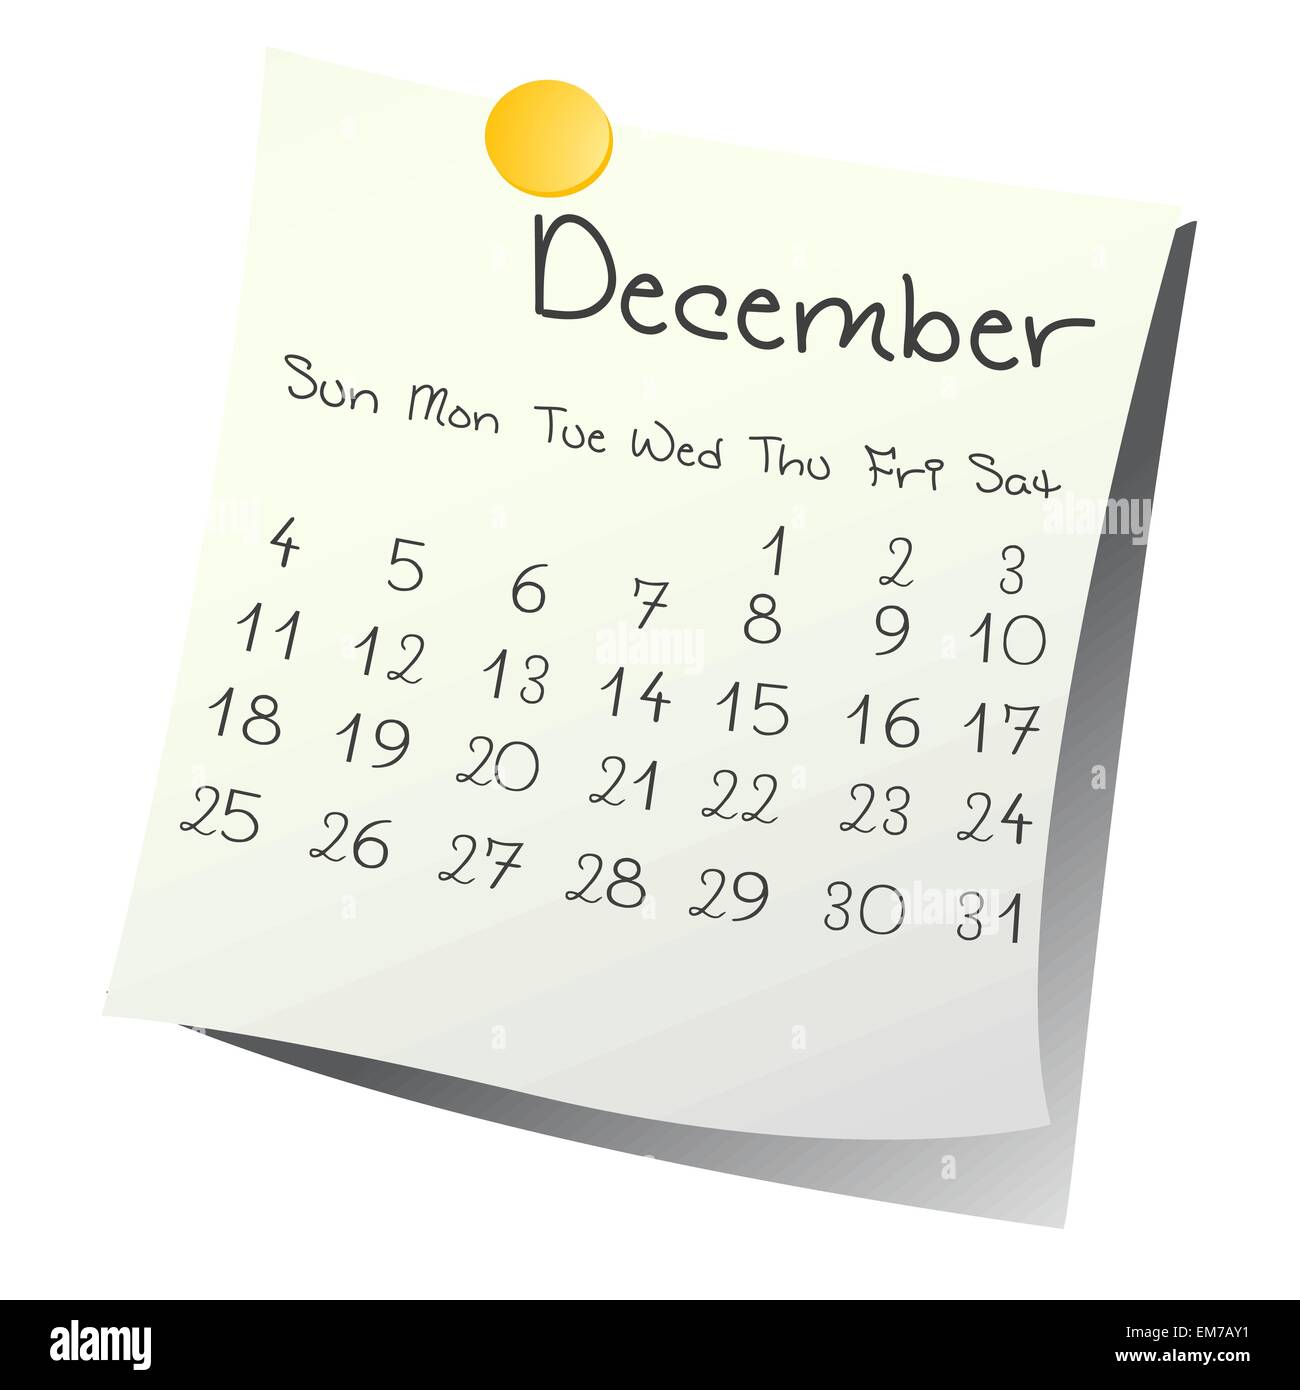 Calendar for December 2011 on paper Stock Vector